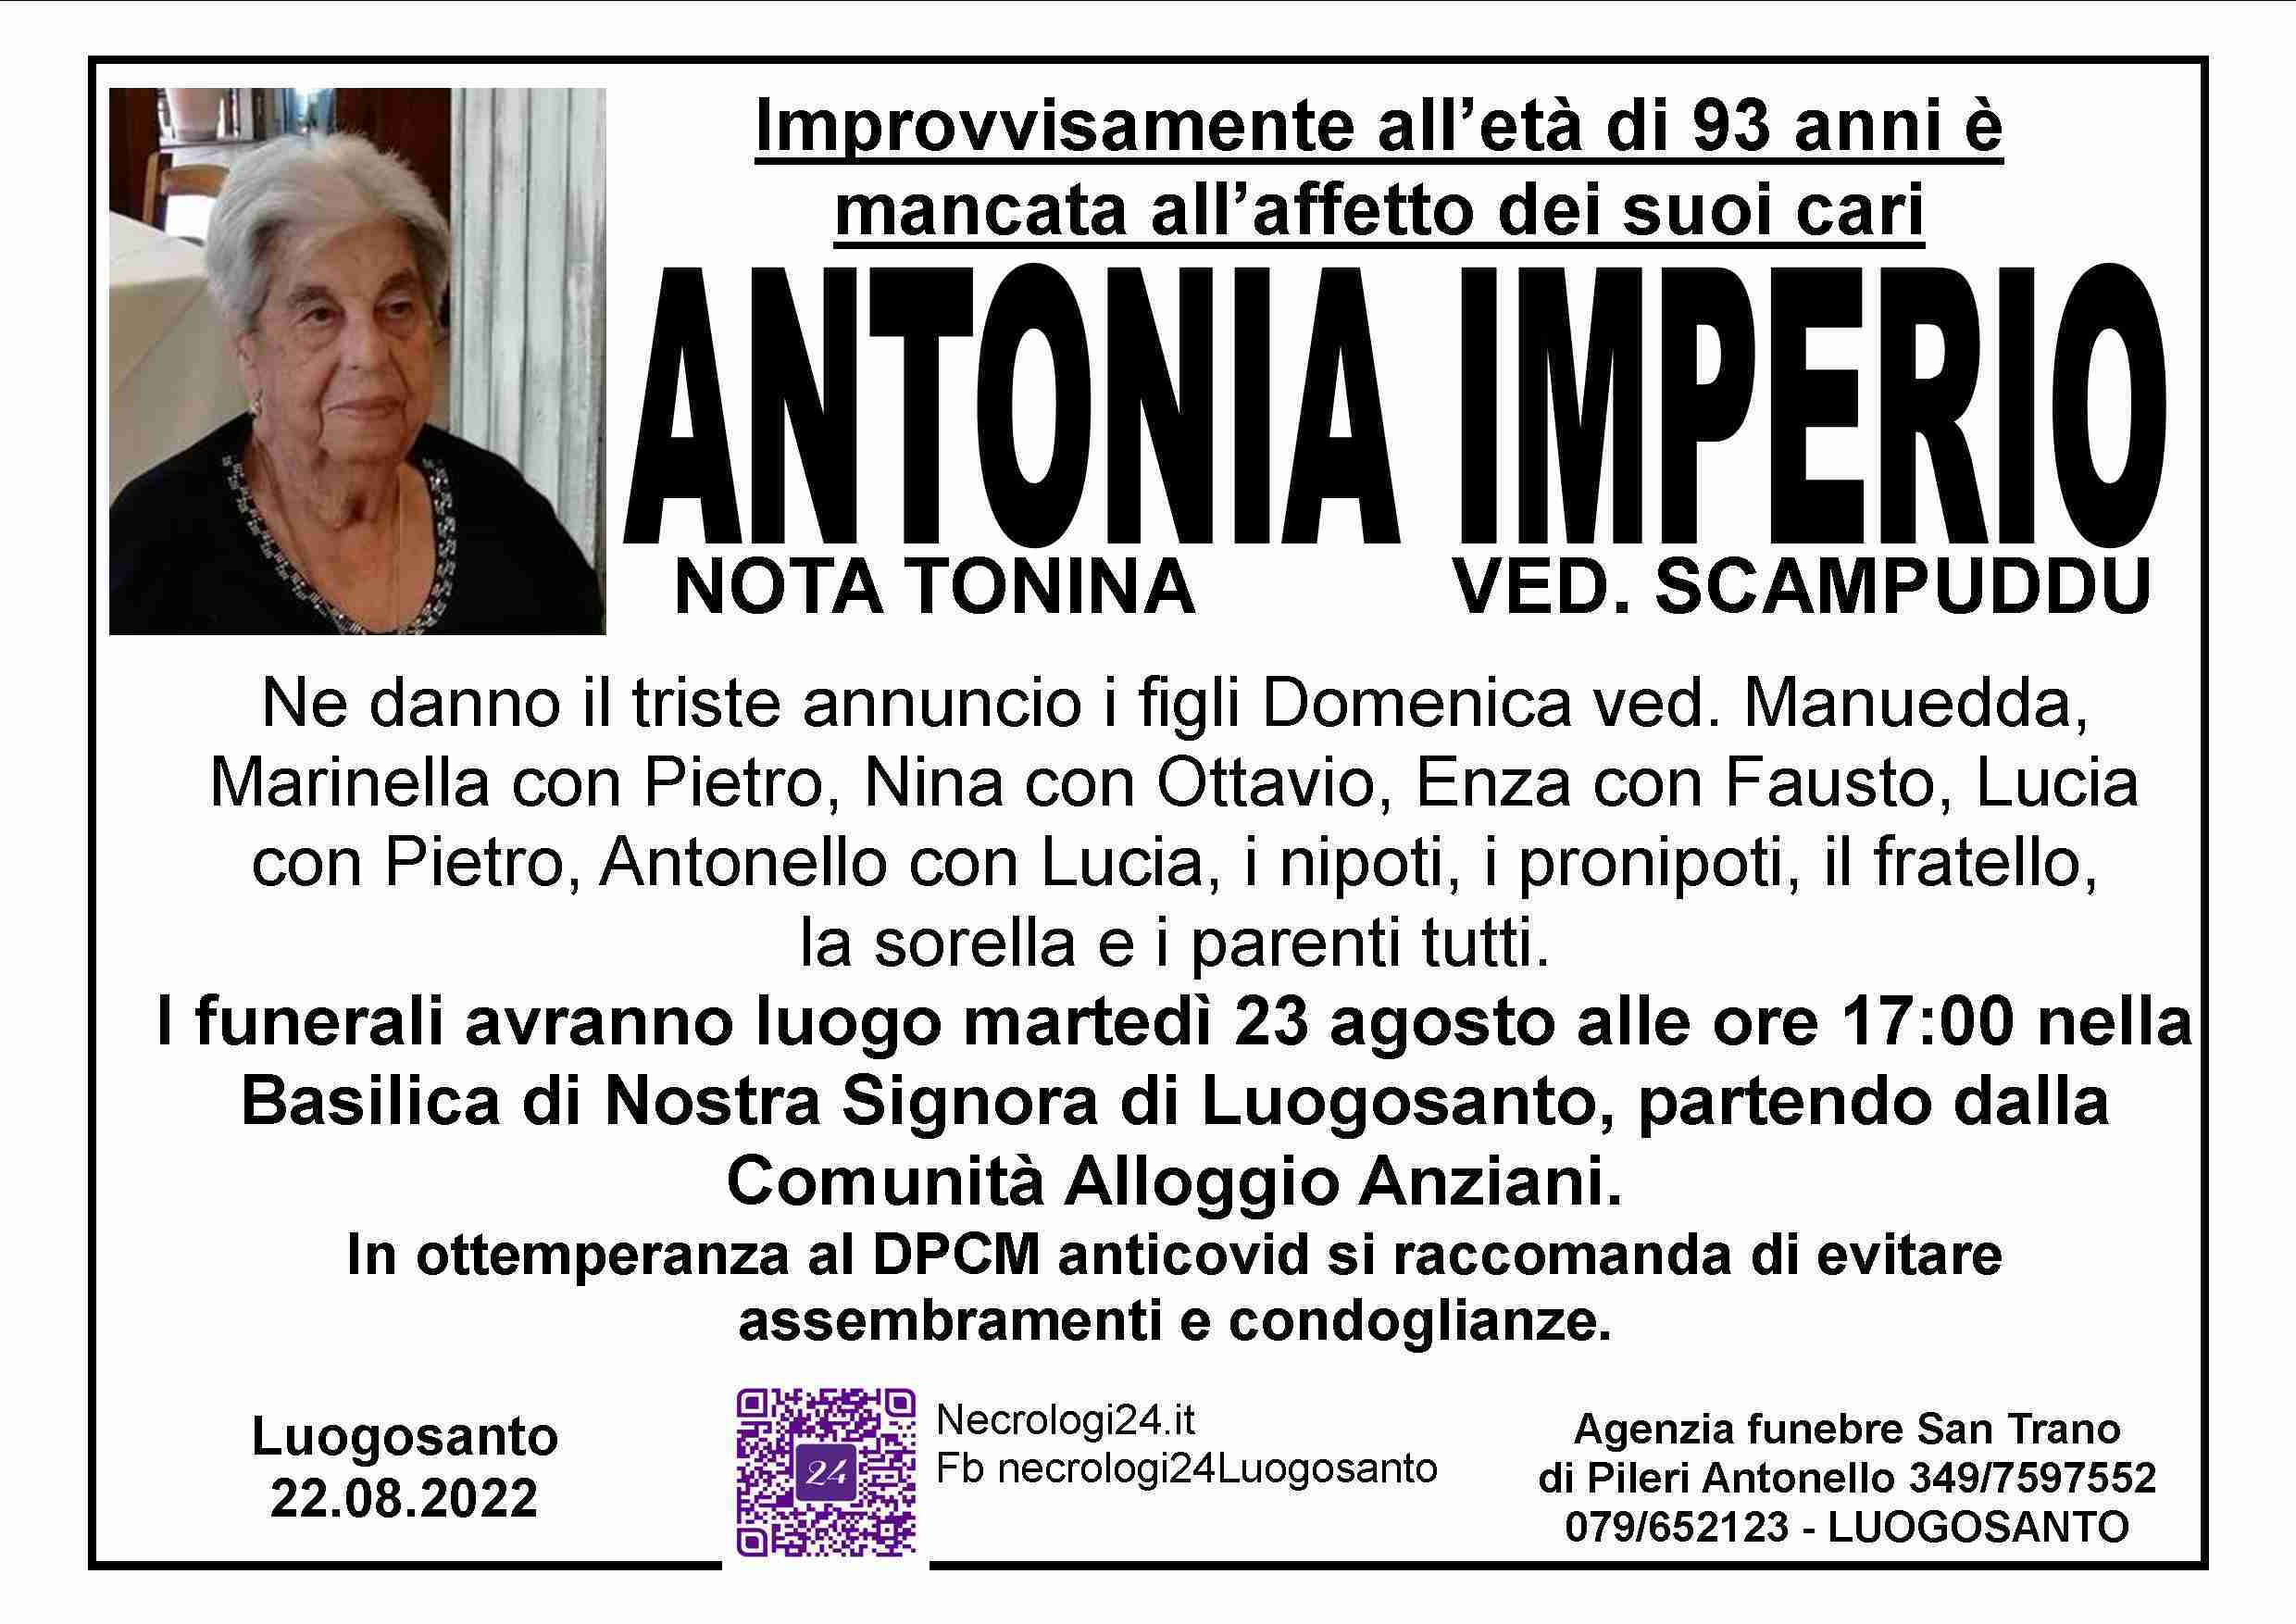 Antonia Imperio